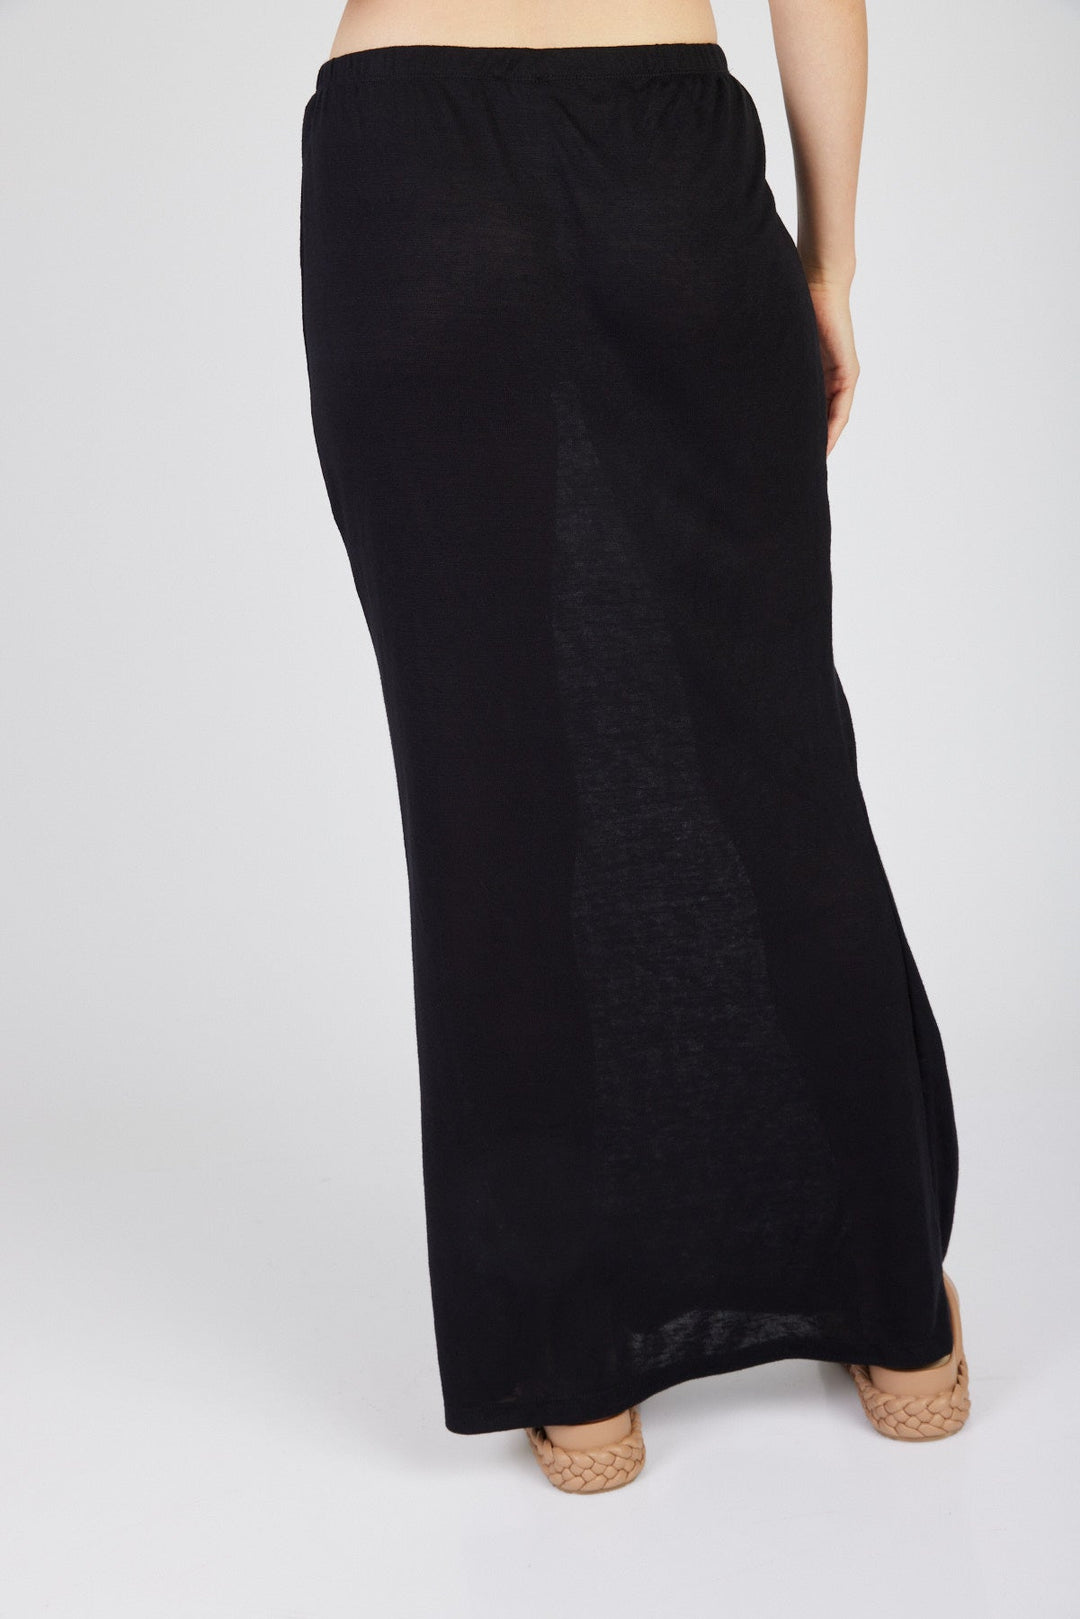 חצאית מקסי אמה בצבע שחור - Moi Collection